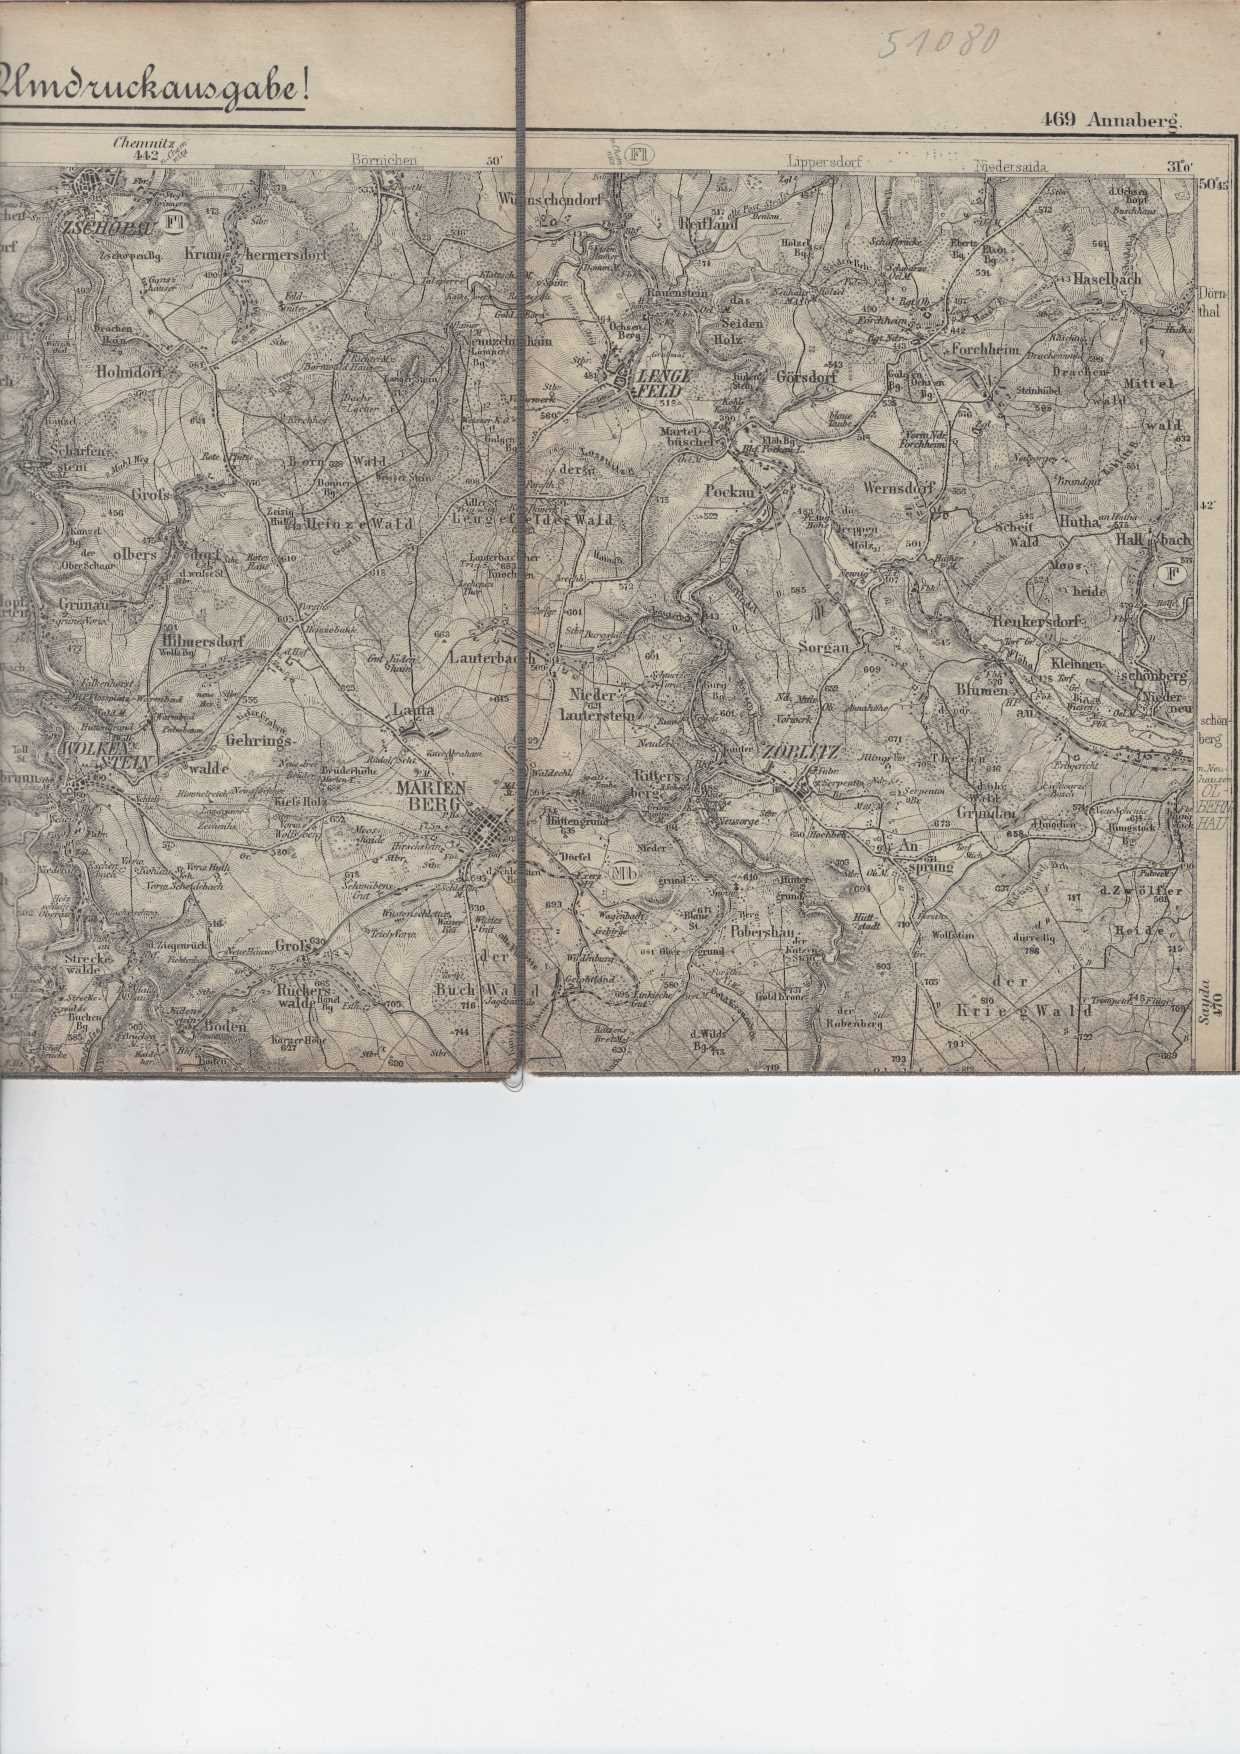   Karte des Deutschen Reiches - Blatt 469 Annaberg. 